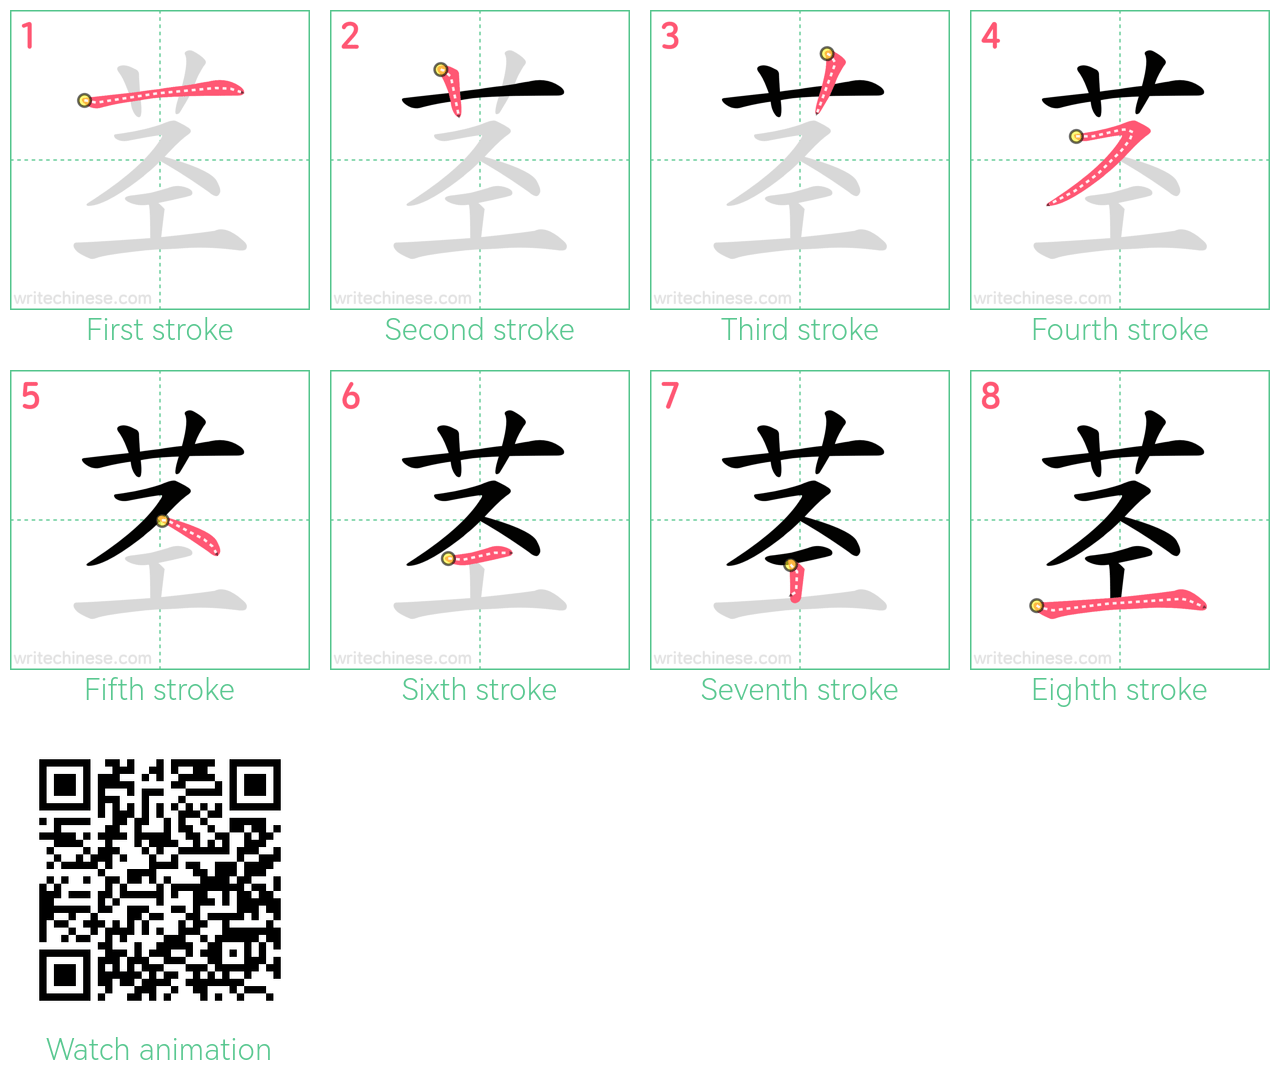 茎 step-by-step stroke order diagrams